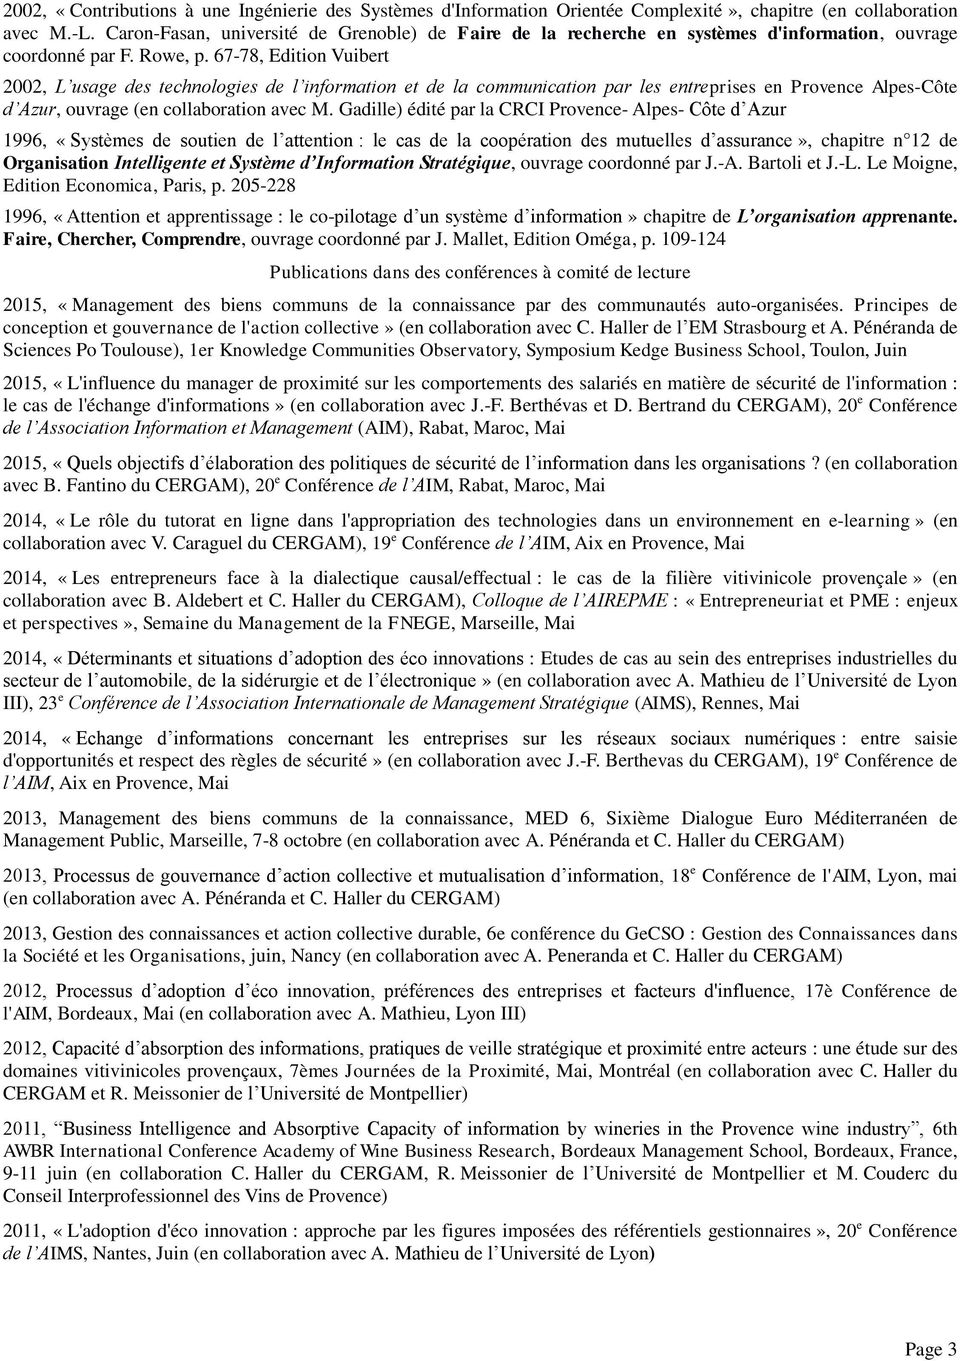 67-78, Edition Vuibert 2002, L usage des technologies de l information et de la communication par les entreprises en Provence Alpes-Côte d Azur, ouvrage (en collaboration avec M.